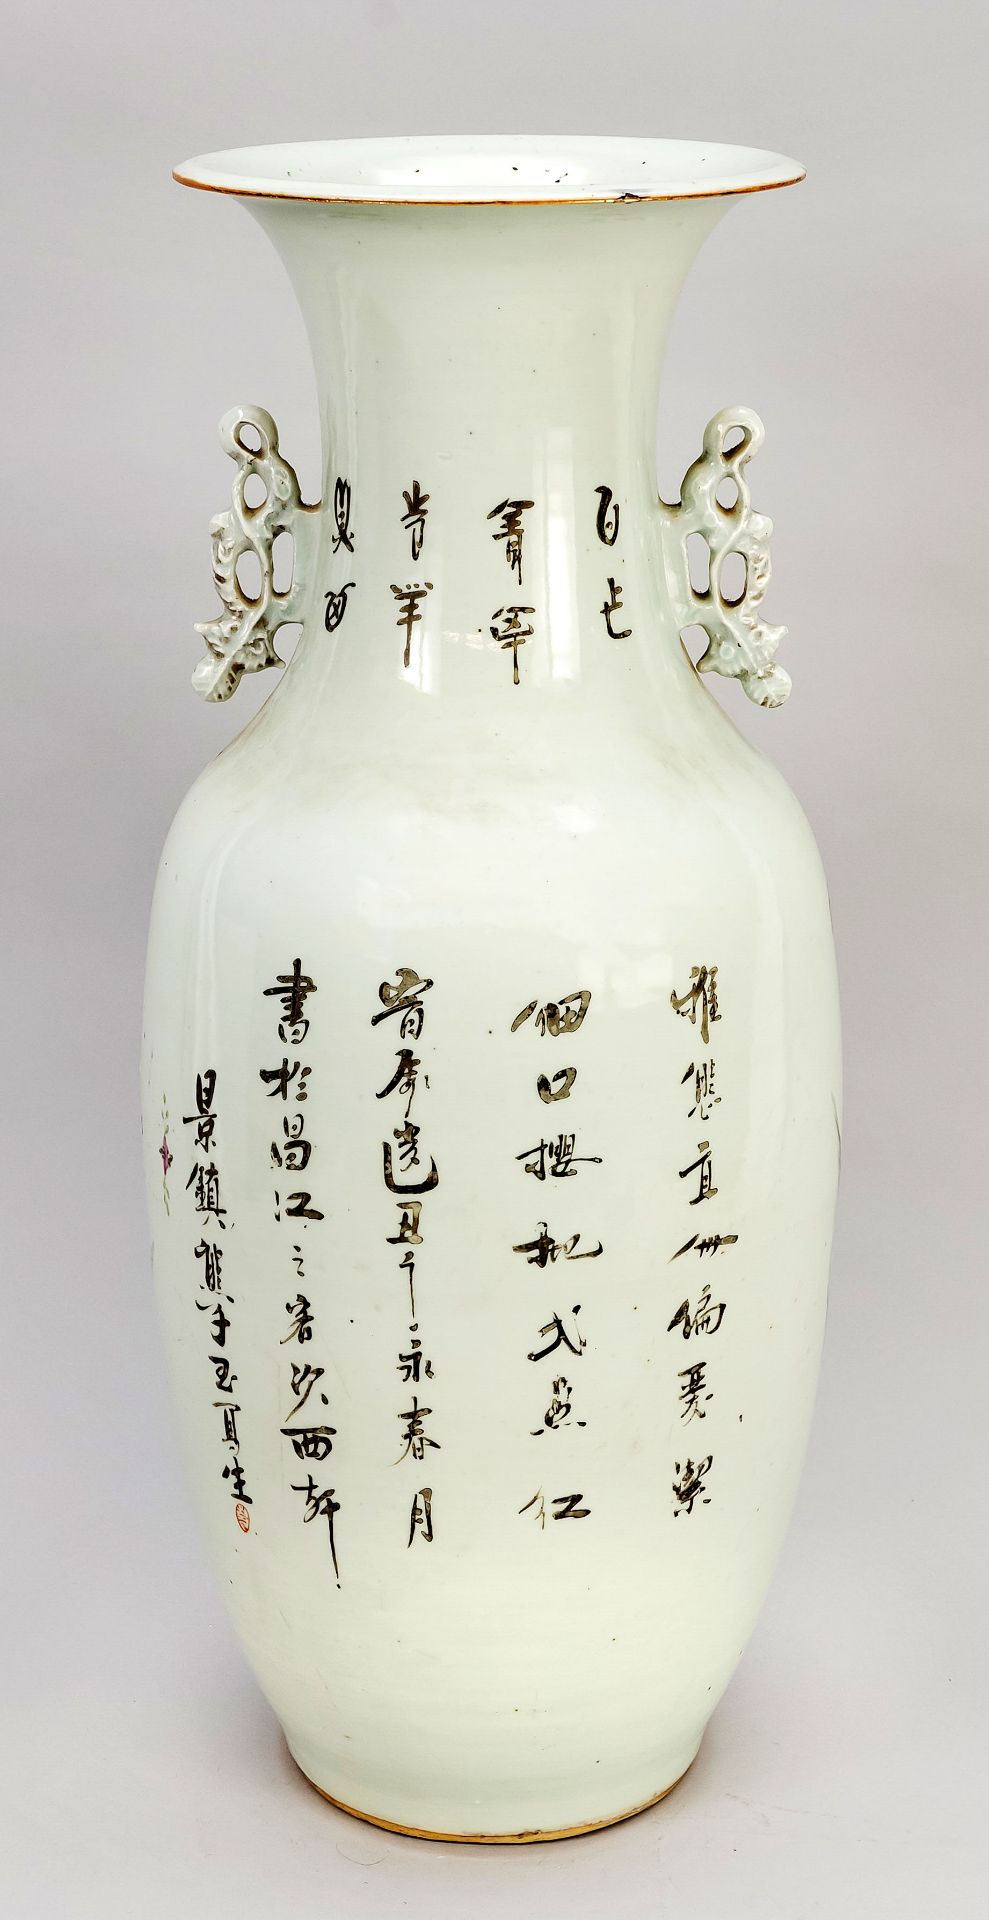 Large Hu bottom vase, China, Republic period(1912-1949), datable, porcelain with polychrome enamel - Image 2 of 2